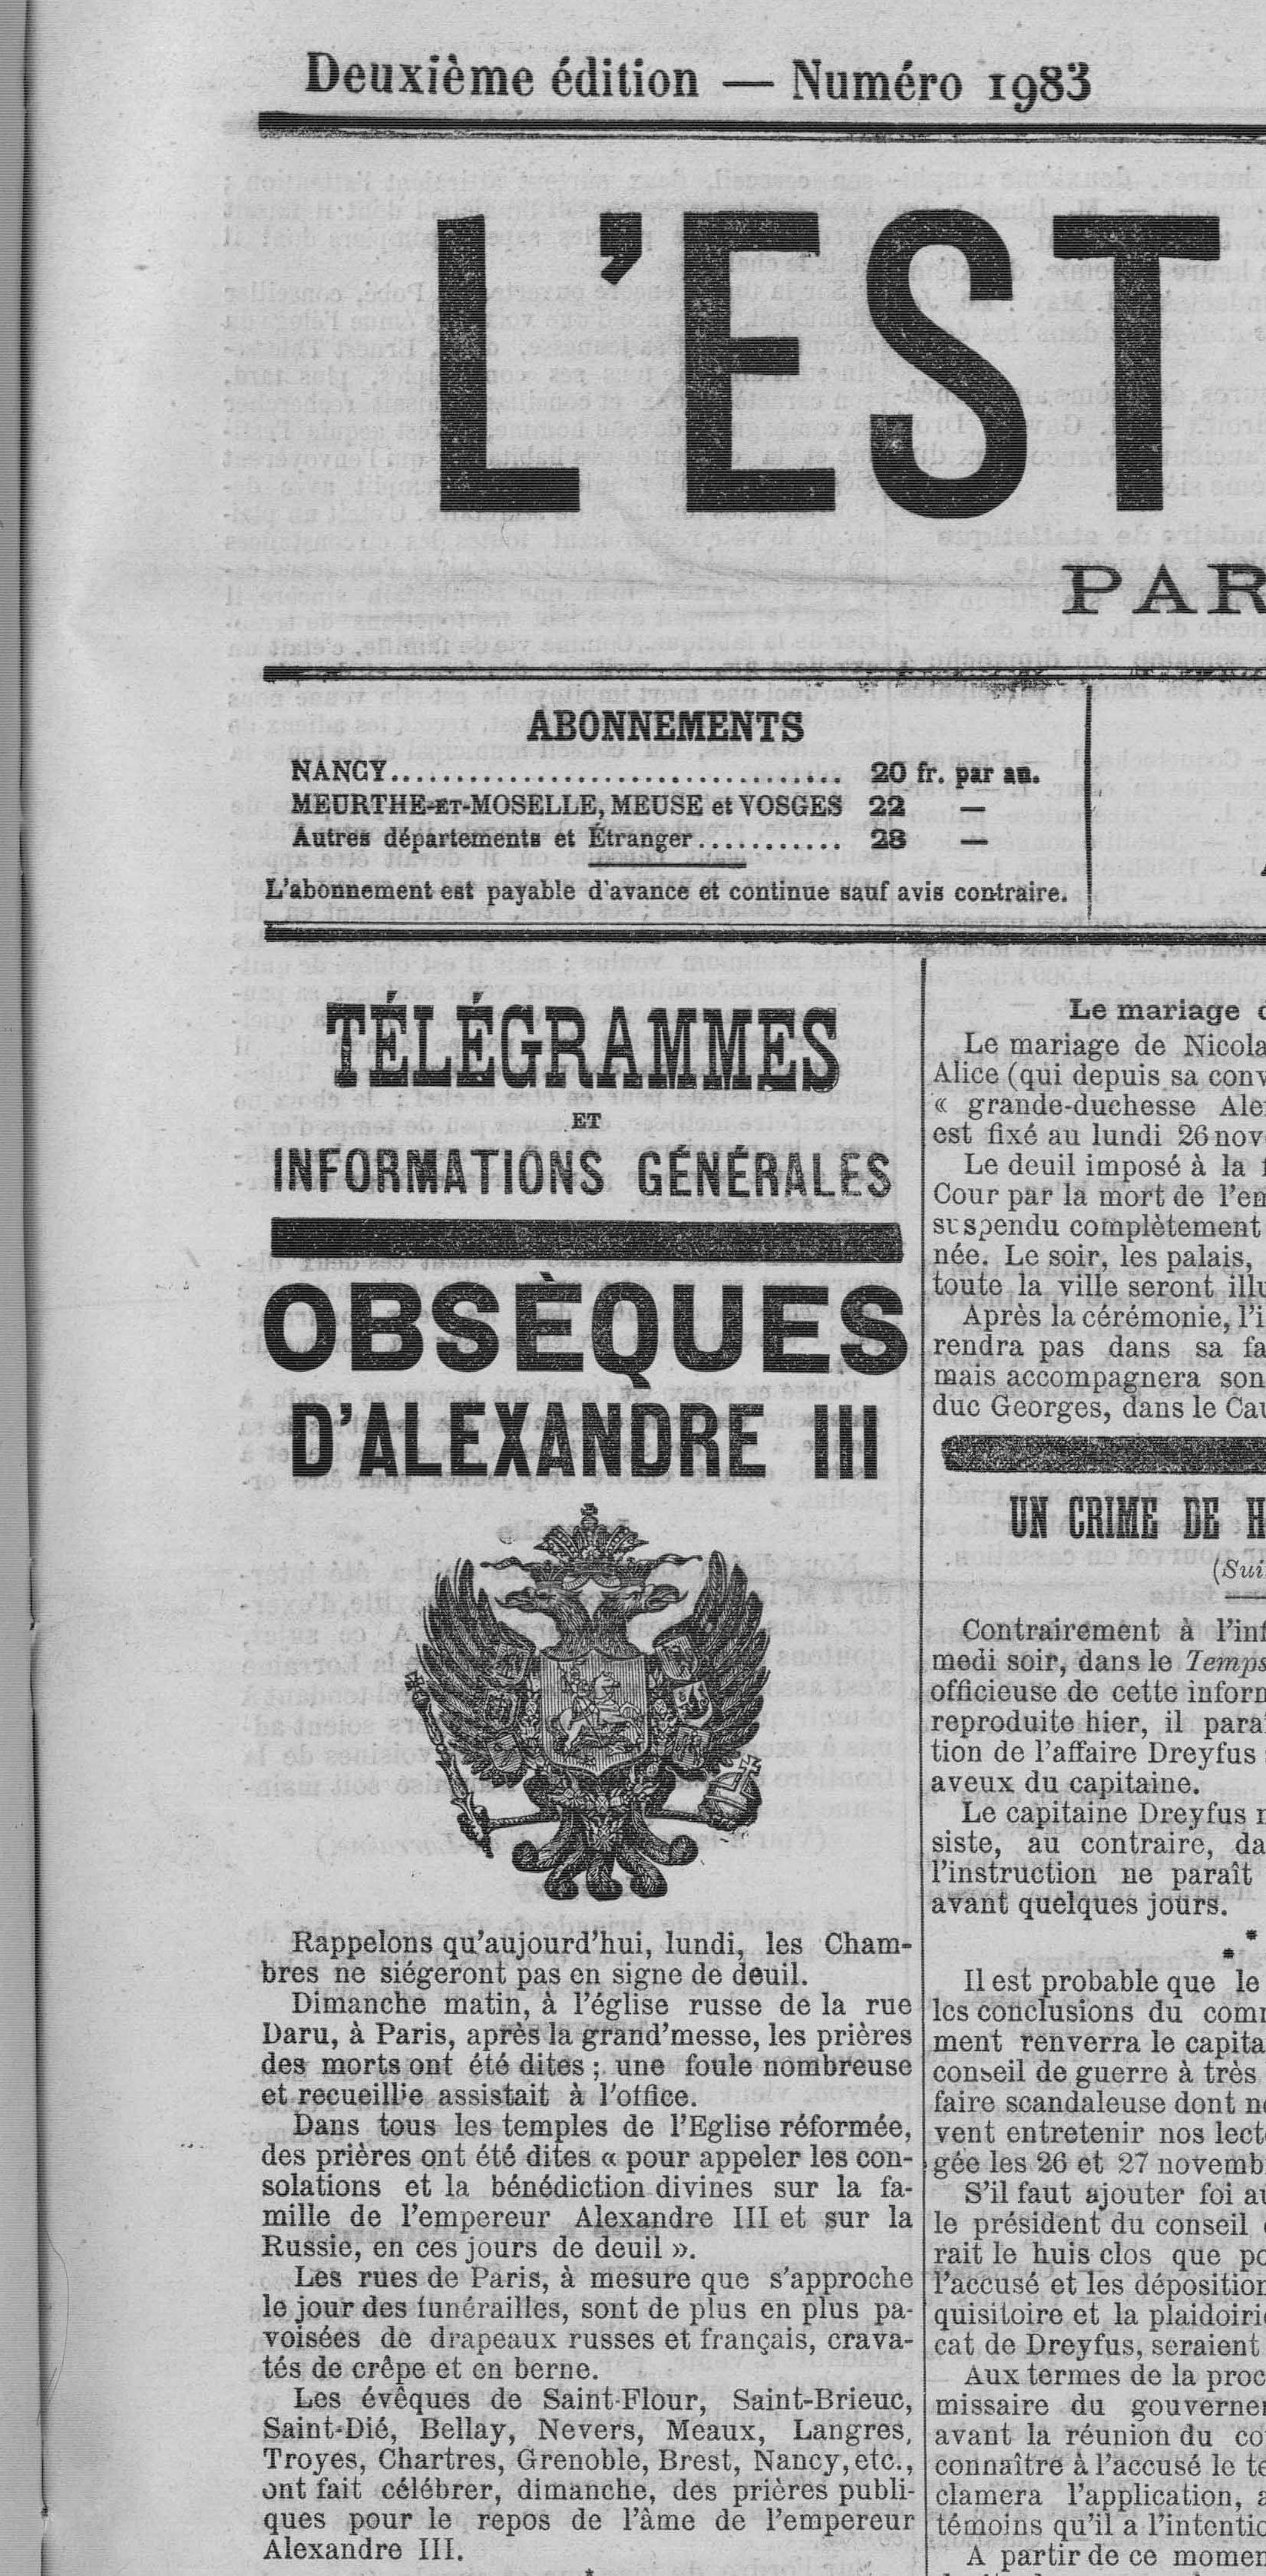 Contenu du L'Est Répuclicain du 19 novembre 1894